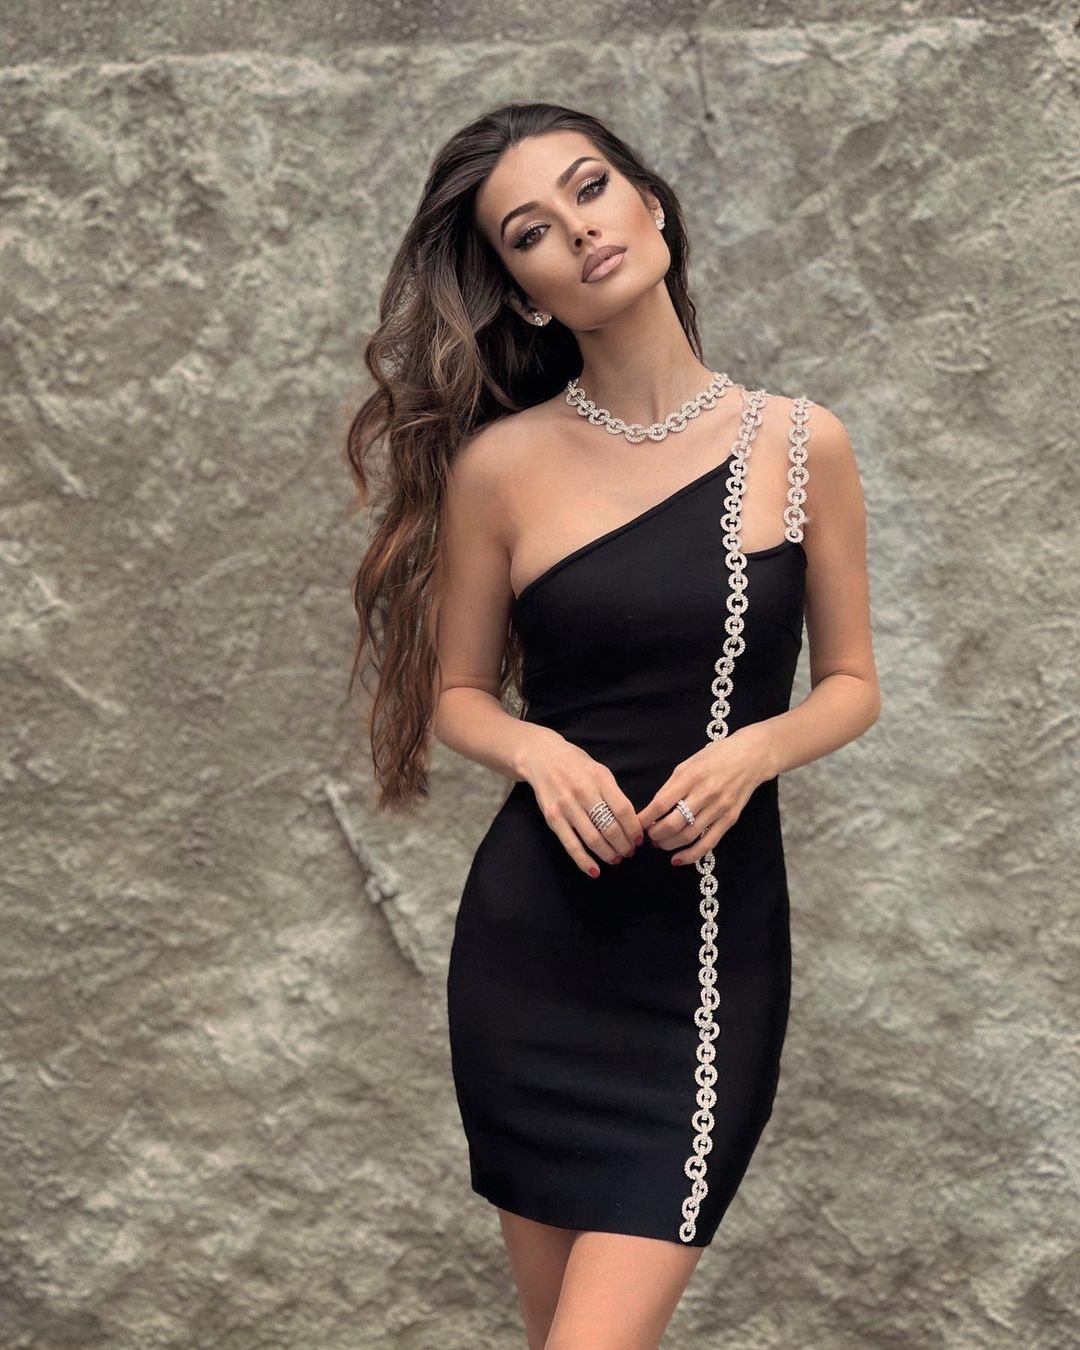 Sexy Body Con Dress - Black Dress - Knit Dress - $33.00 - Lulus